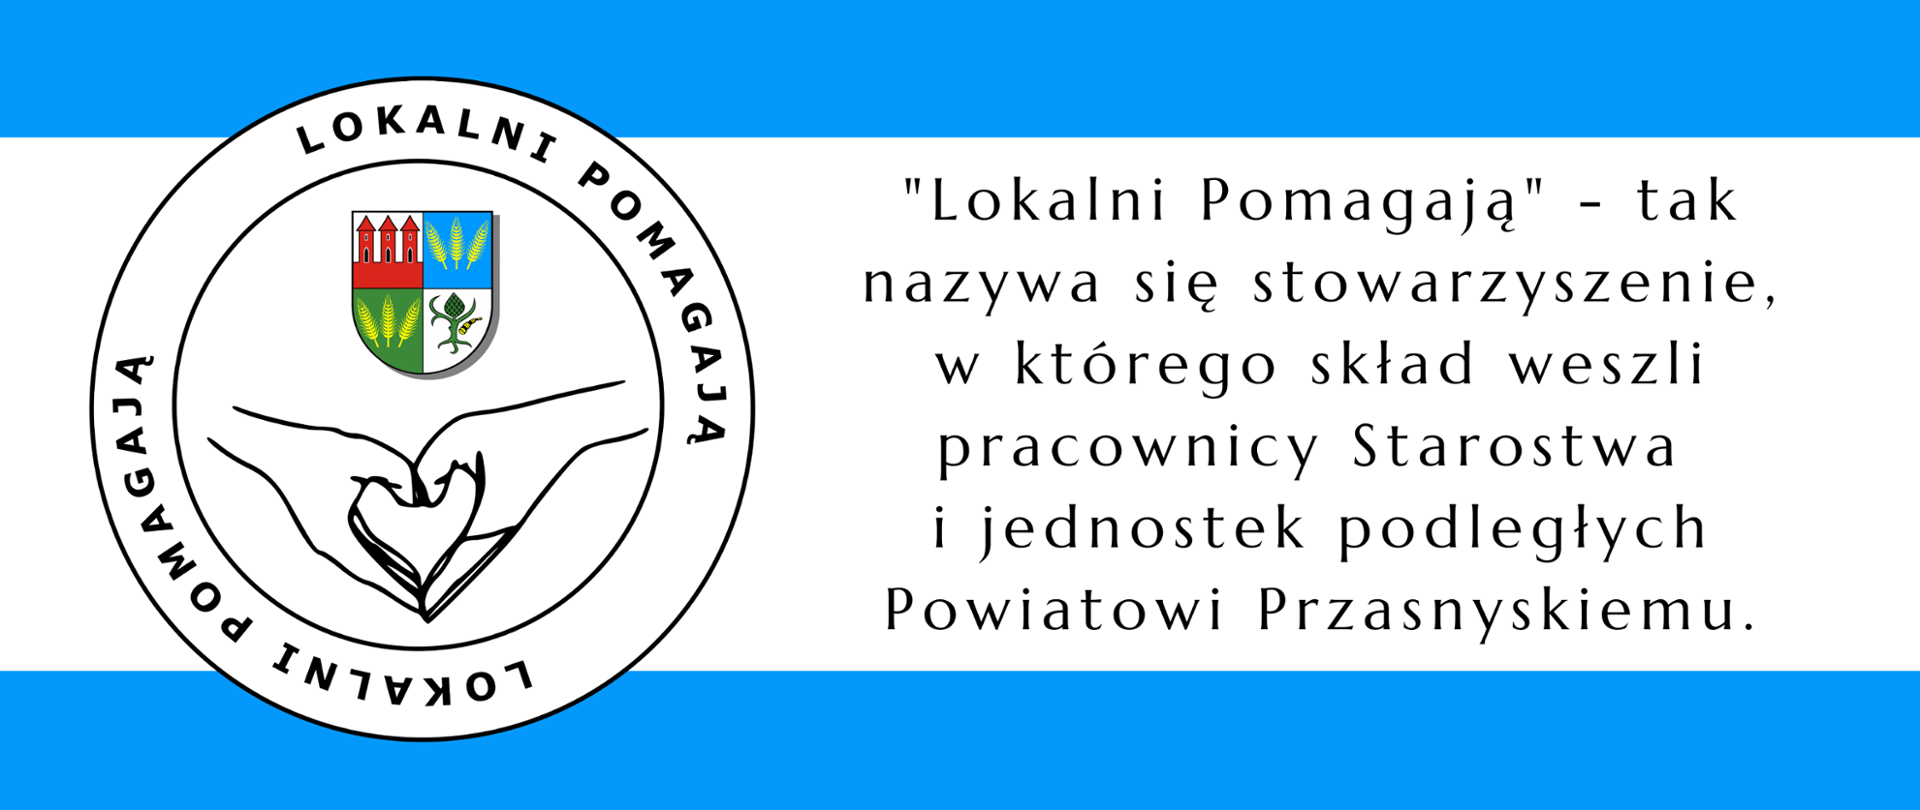 Grafika przedstawia logo stowarzyszenia Lokalni Pomagają oraz treść "Lokalni Pomagają 0- tak nazywa się stowarzyszenie, w którego skład weszli pracownicy Starostwa i jednostek podległych Powiatowi Przasnyskiemu.